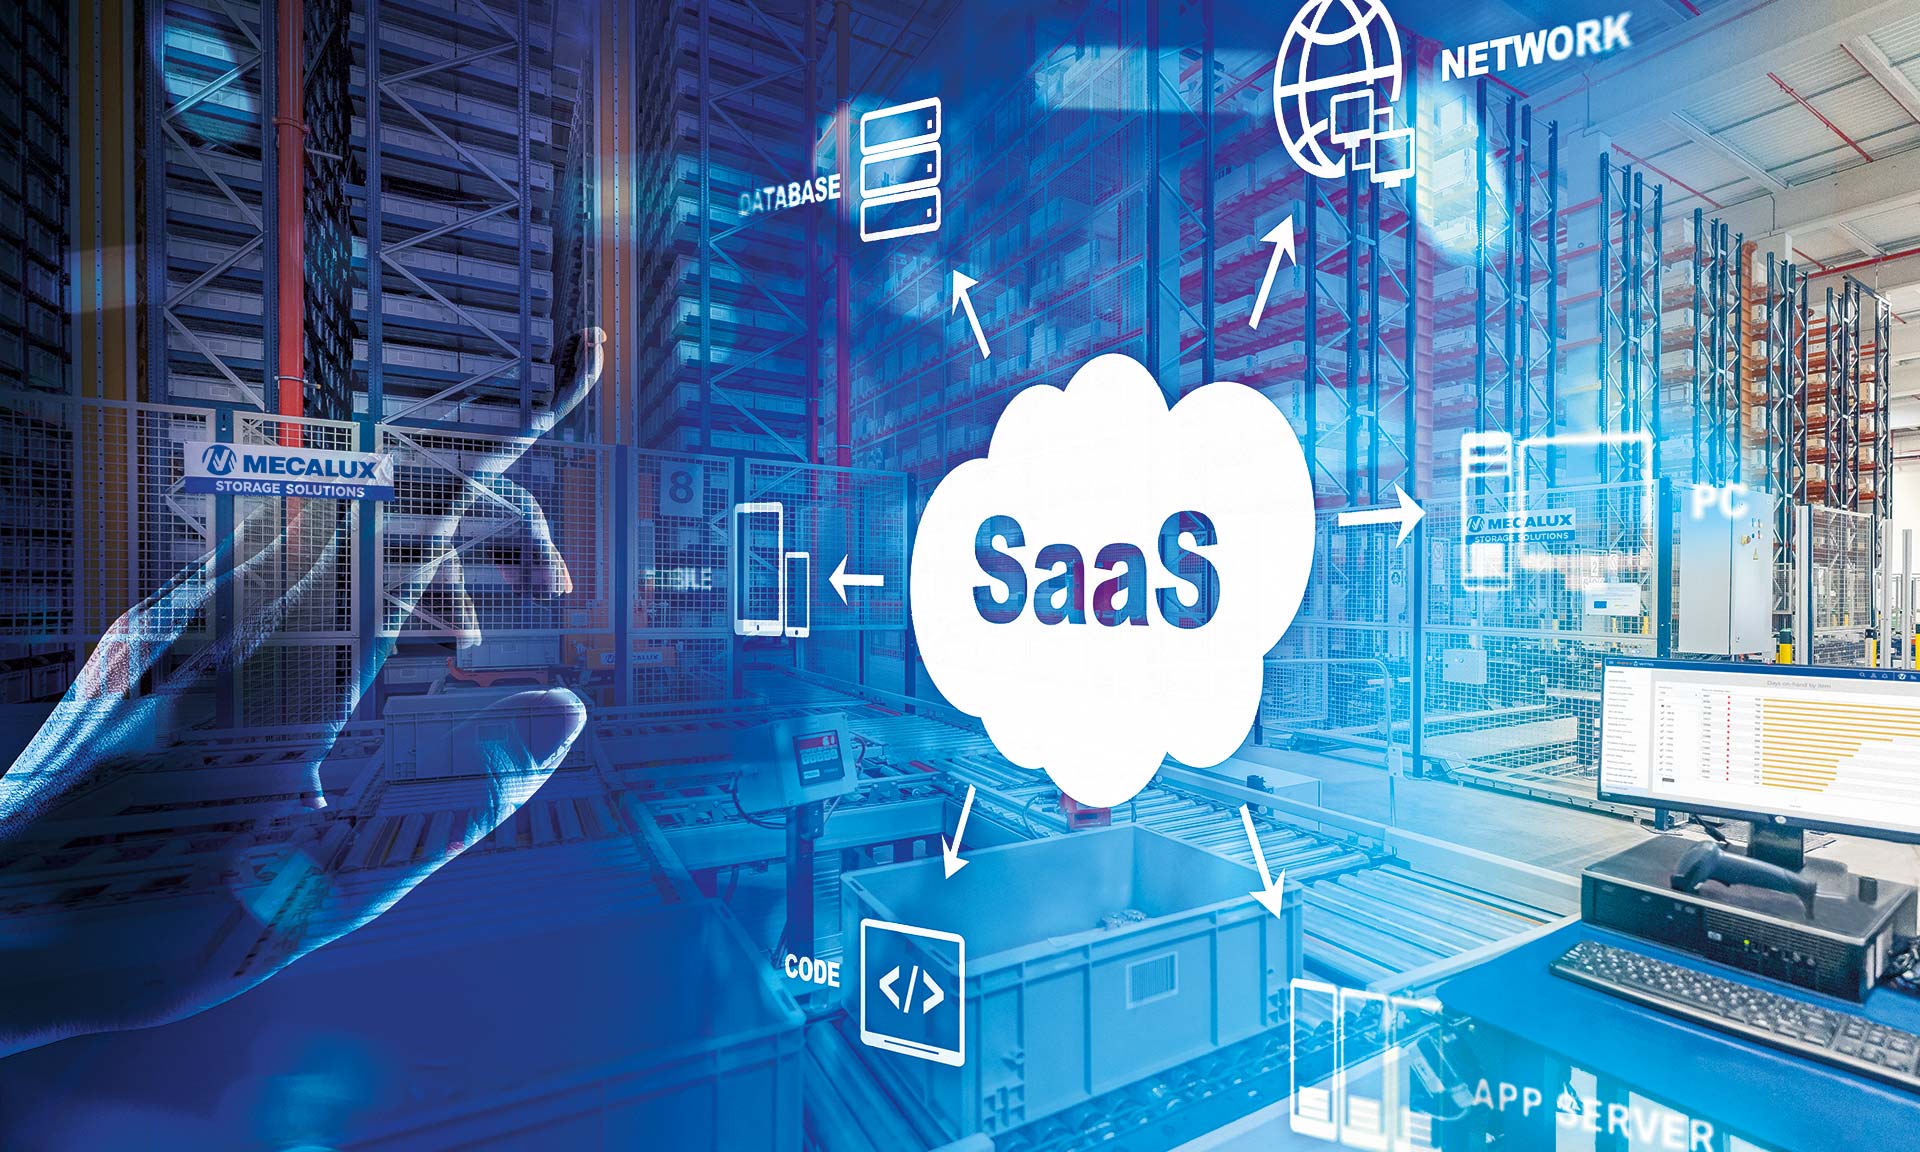 Los sistemas SaaS permiten a las empresas despreocuparse sobre la infraestructura de ciertas aplicaciones